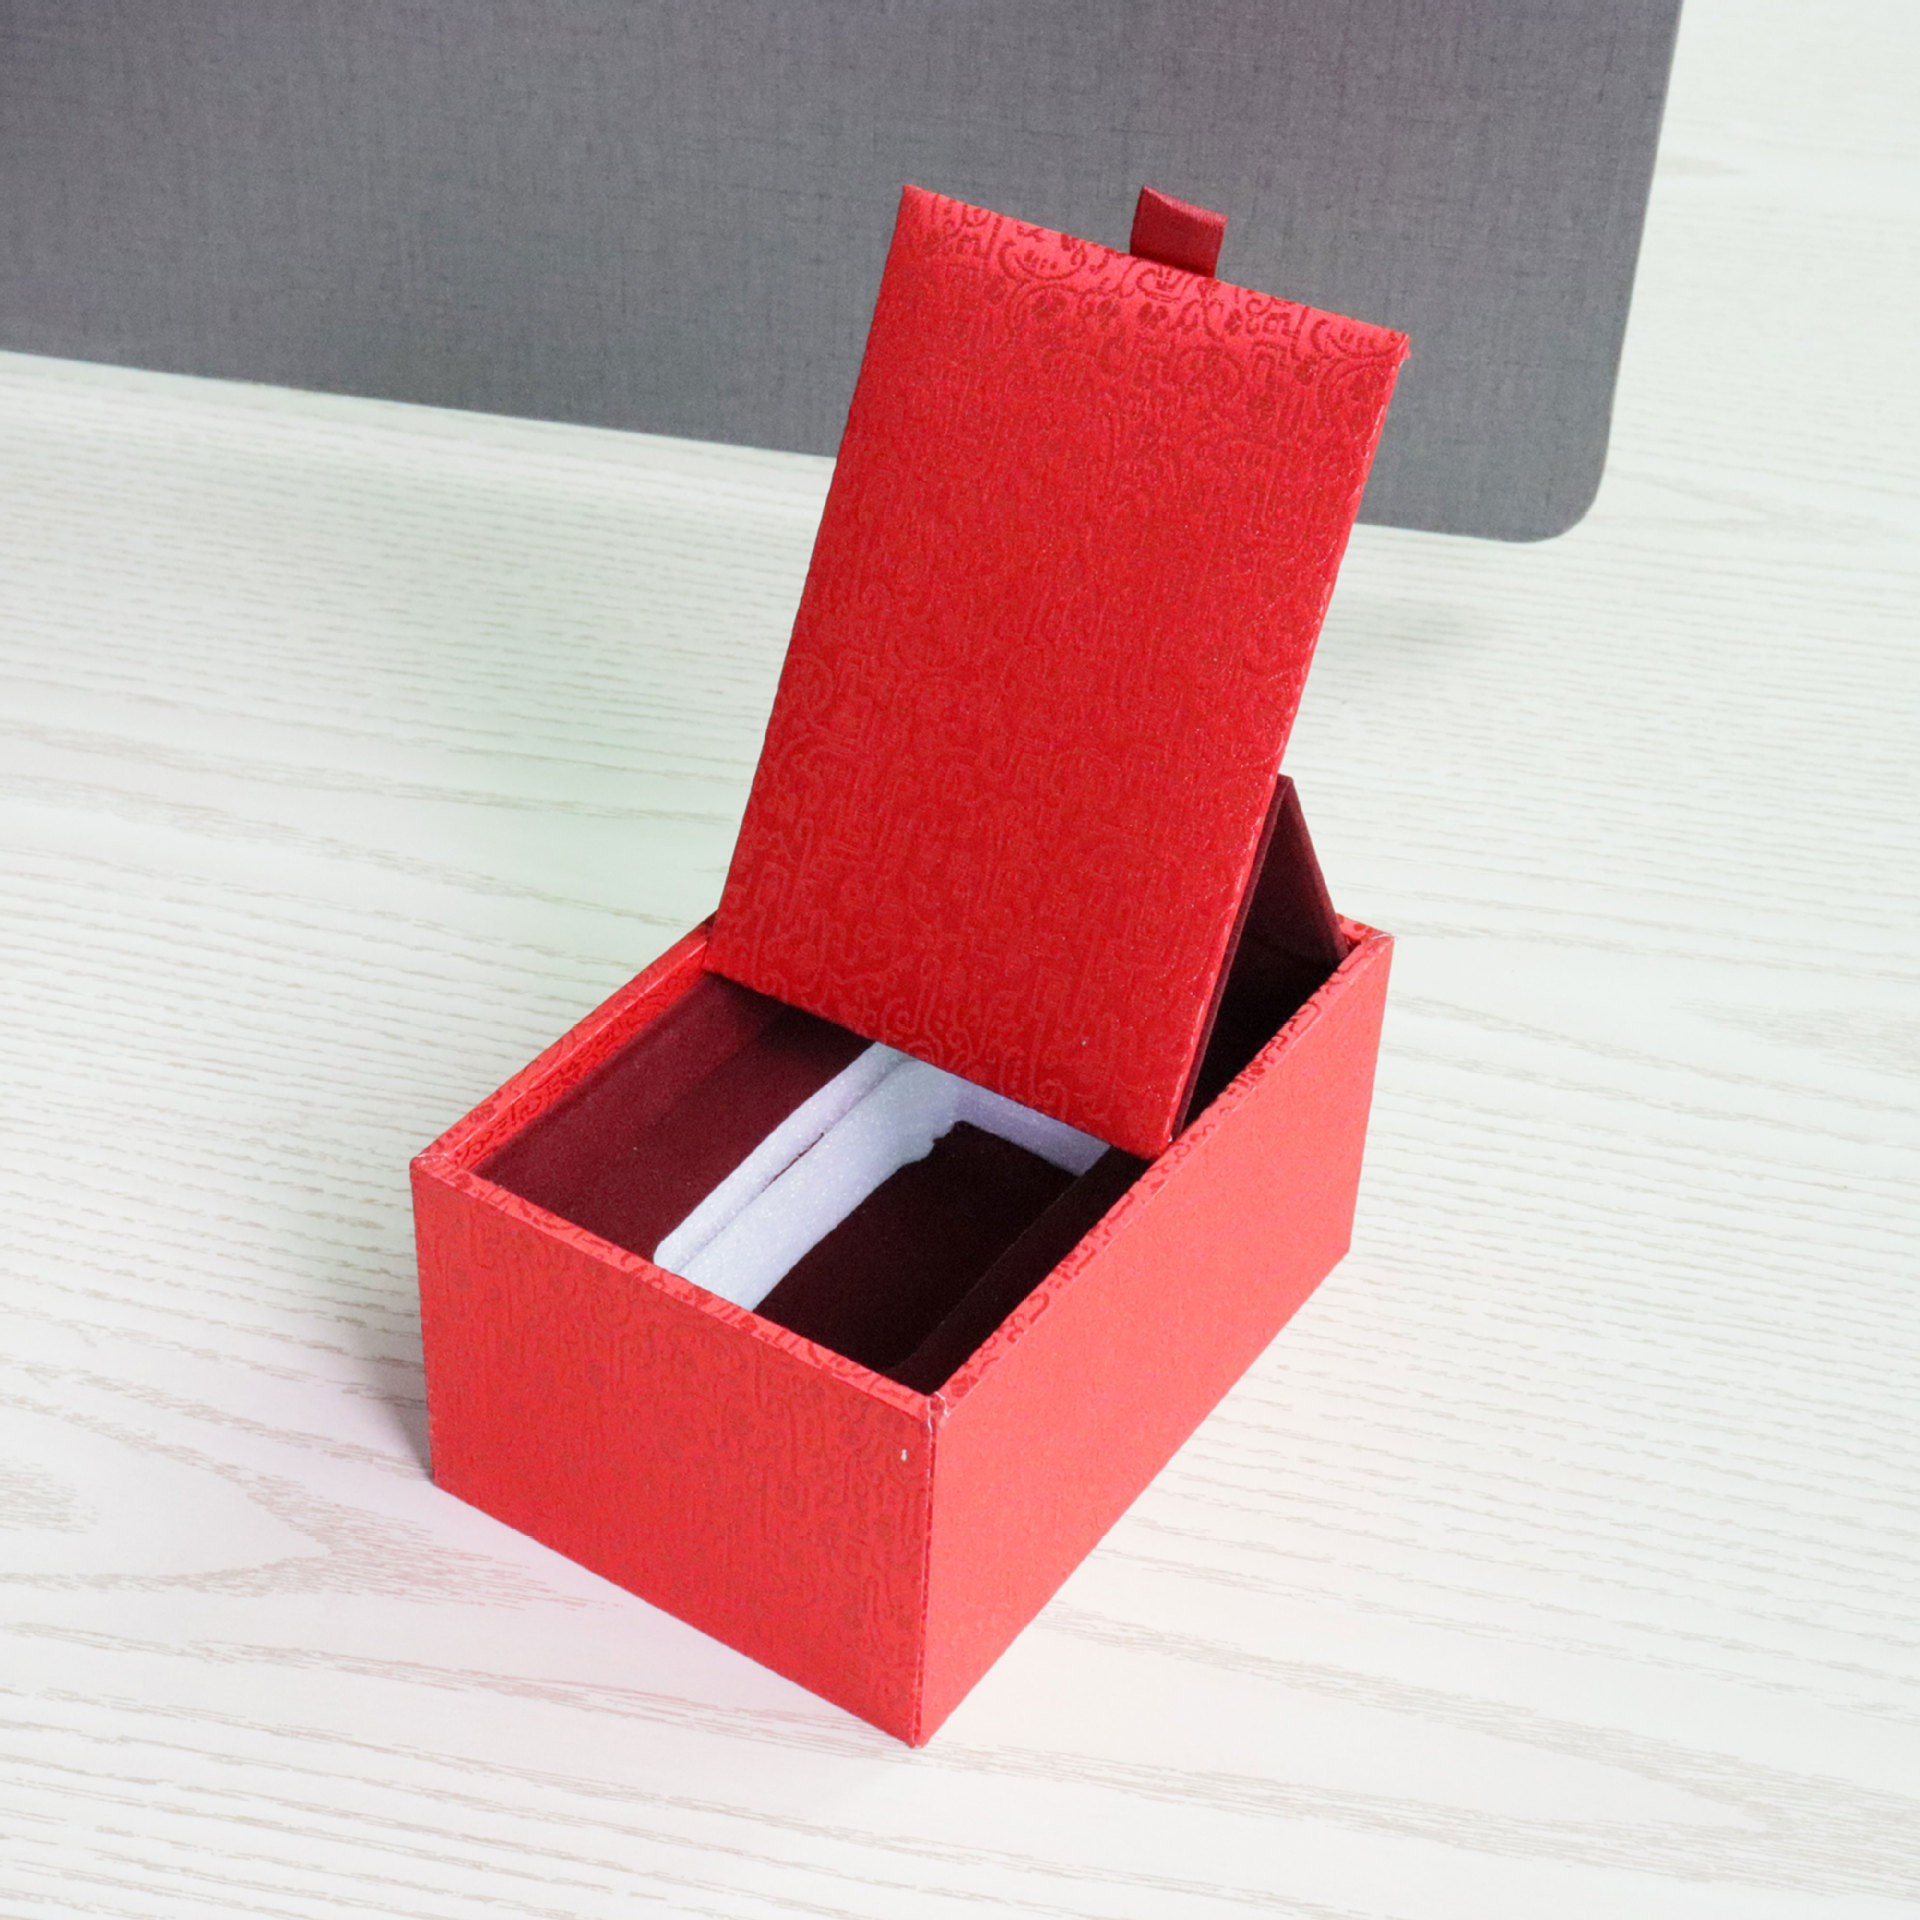 成都包装盒设计印刷_苹果设计包装高端盒_珠海印刷招聘糊盒机长